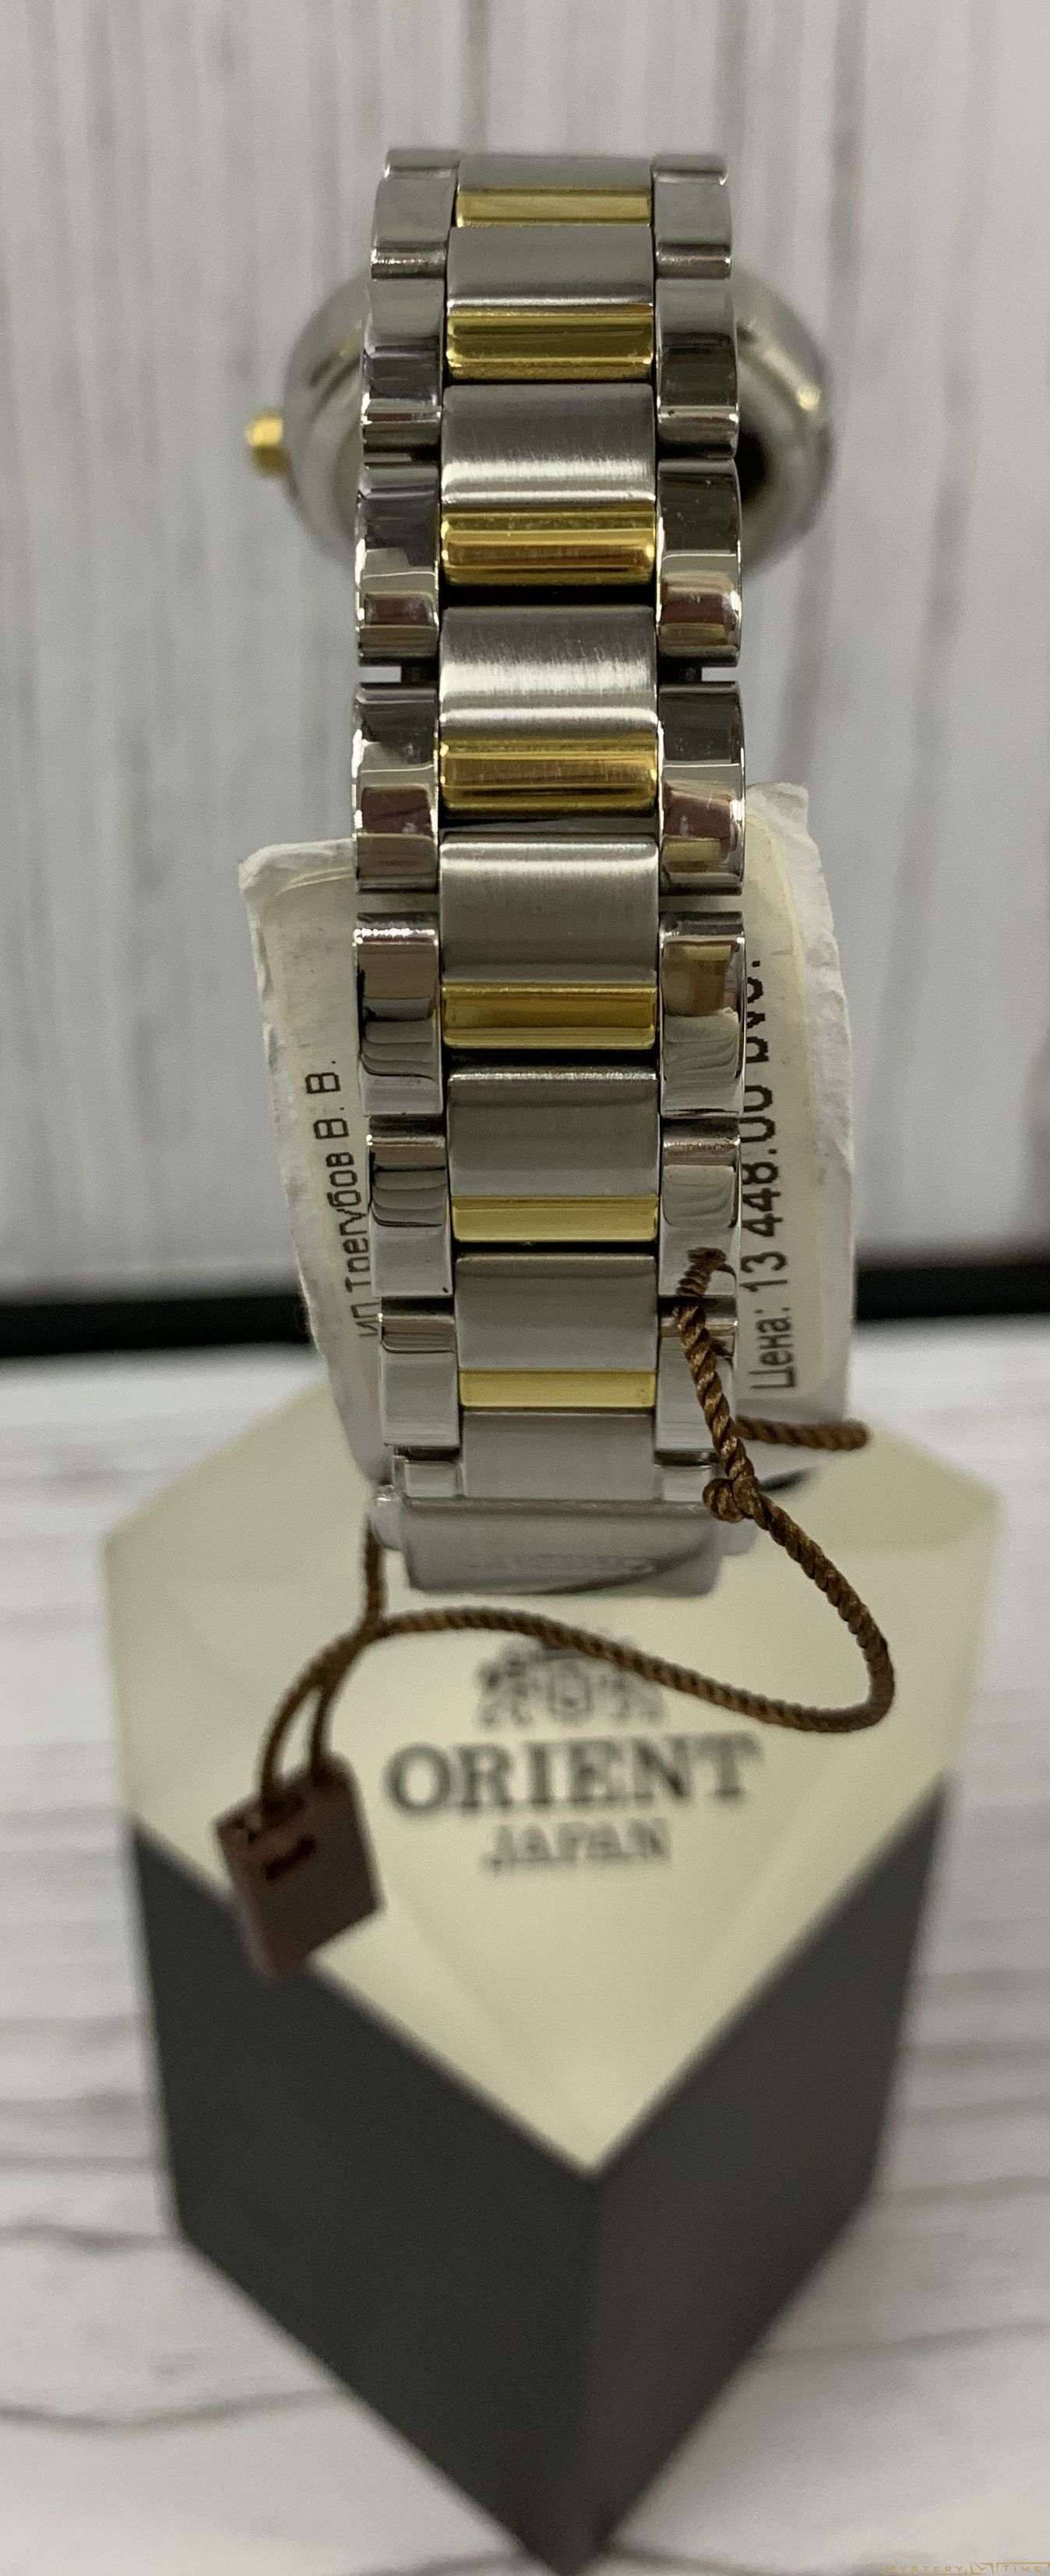 Orient QC0M003W